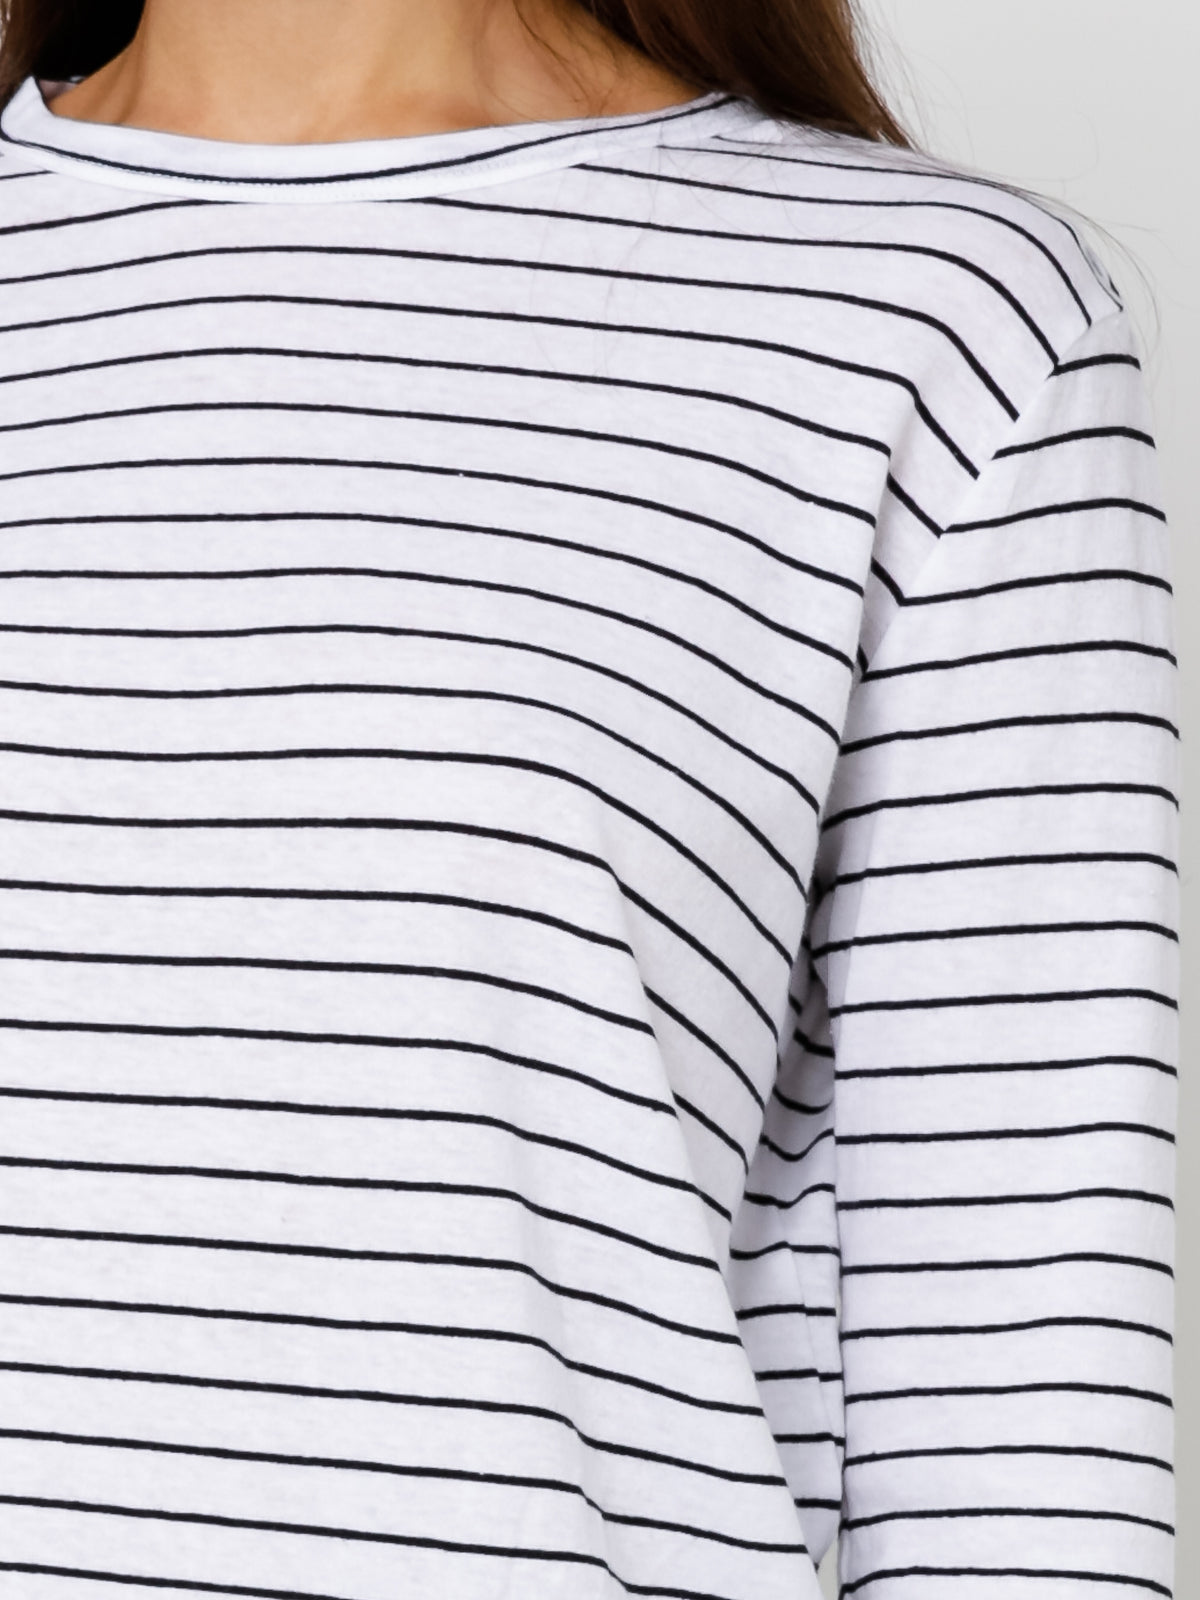 Bay Long Sleeve T-Shirt in Black &amp; White Stripe